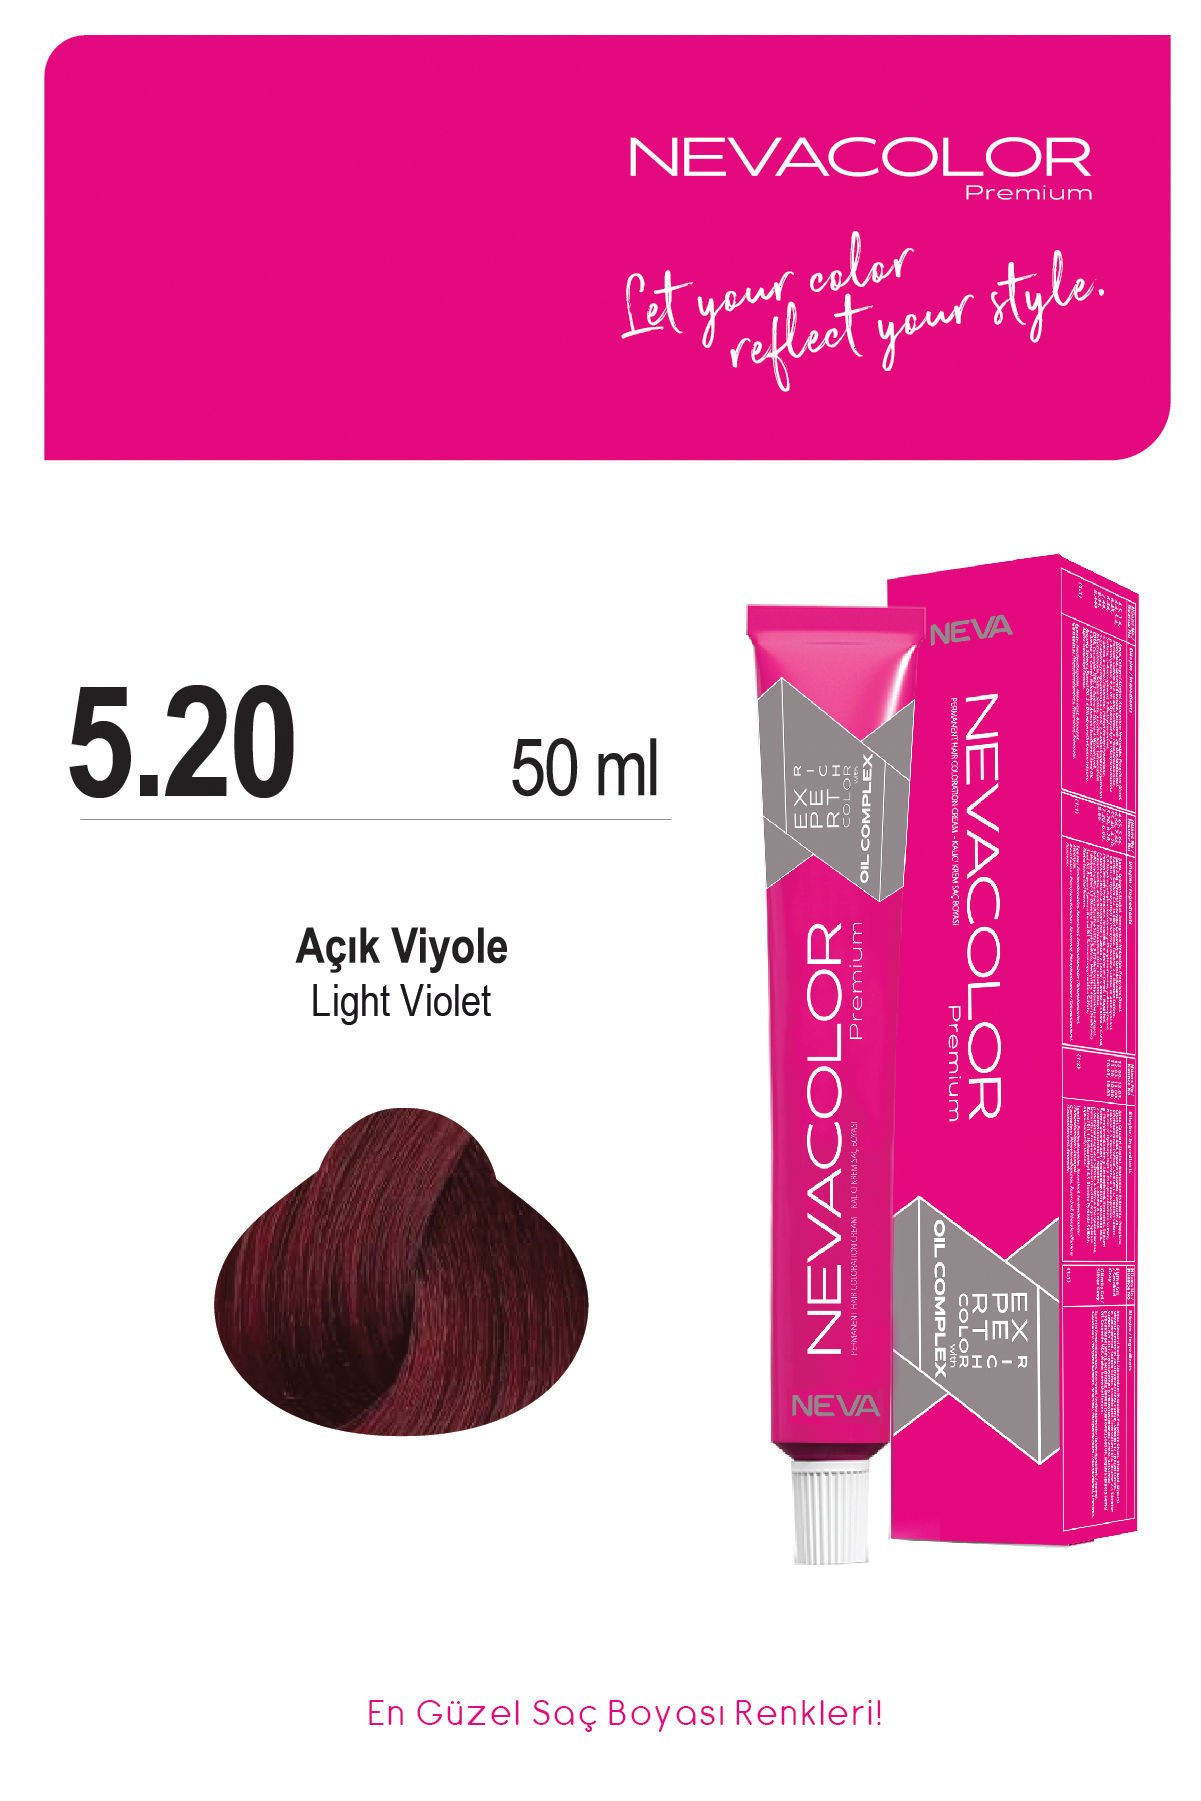 Nevacolor Premium 5.20 Açık Viyole - Kalıcı Krem Saç Boyası 50 g Tüp